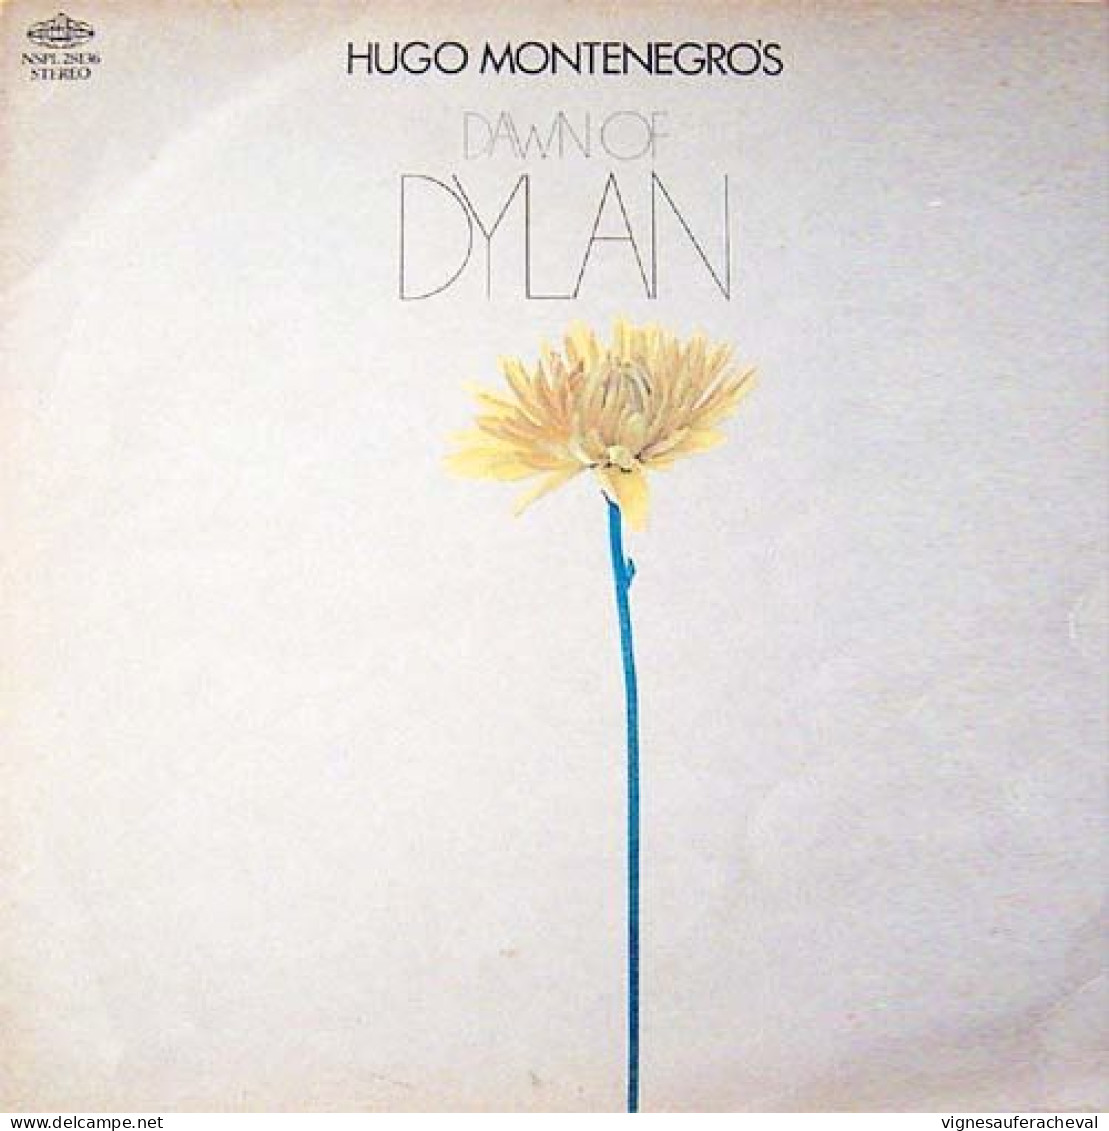 Hugo Montenegros - Dawn Of Dylan - Jazz